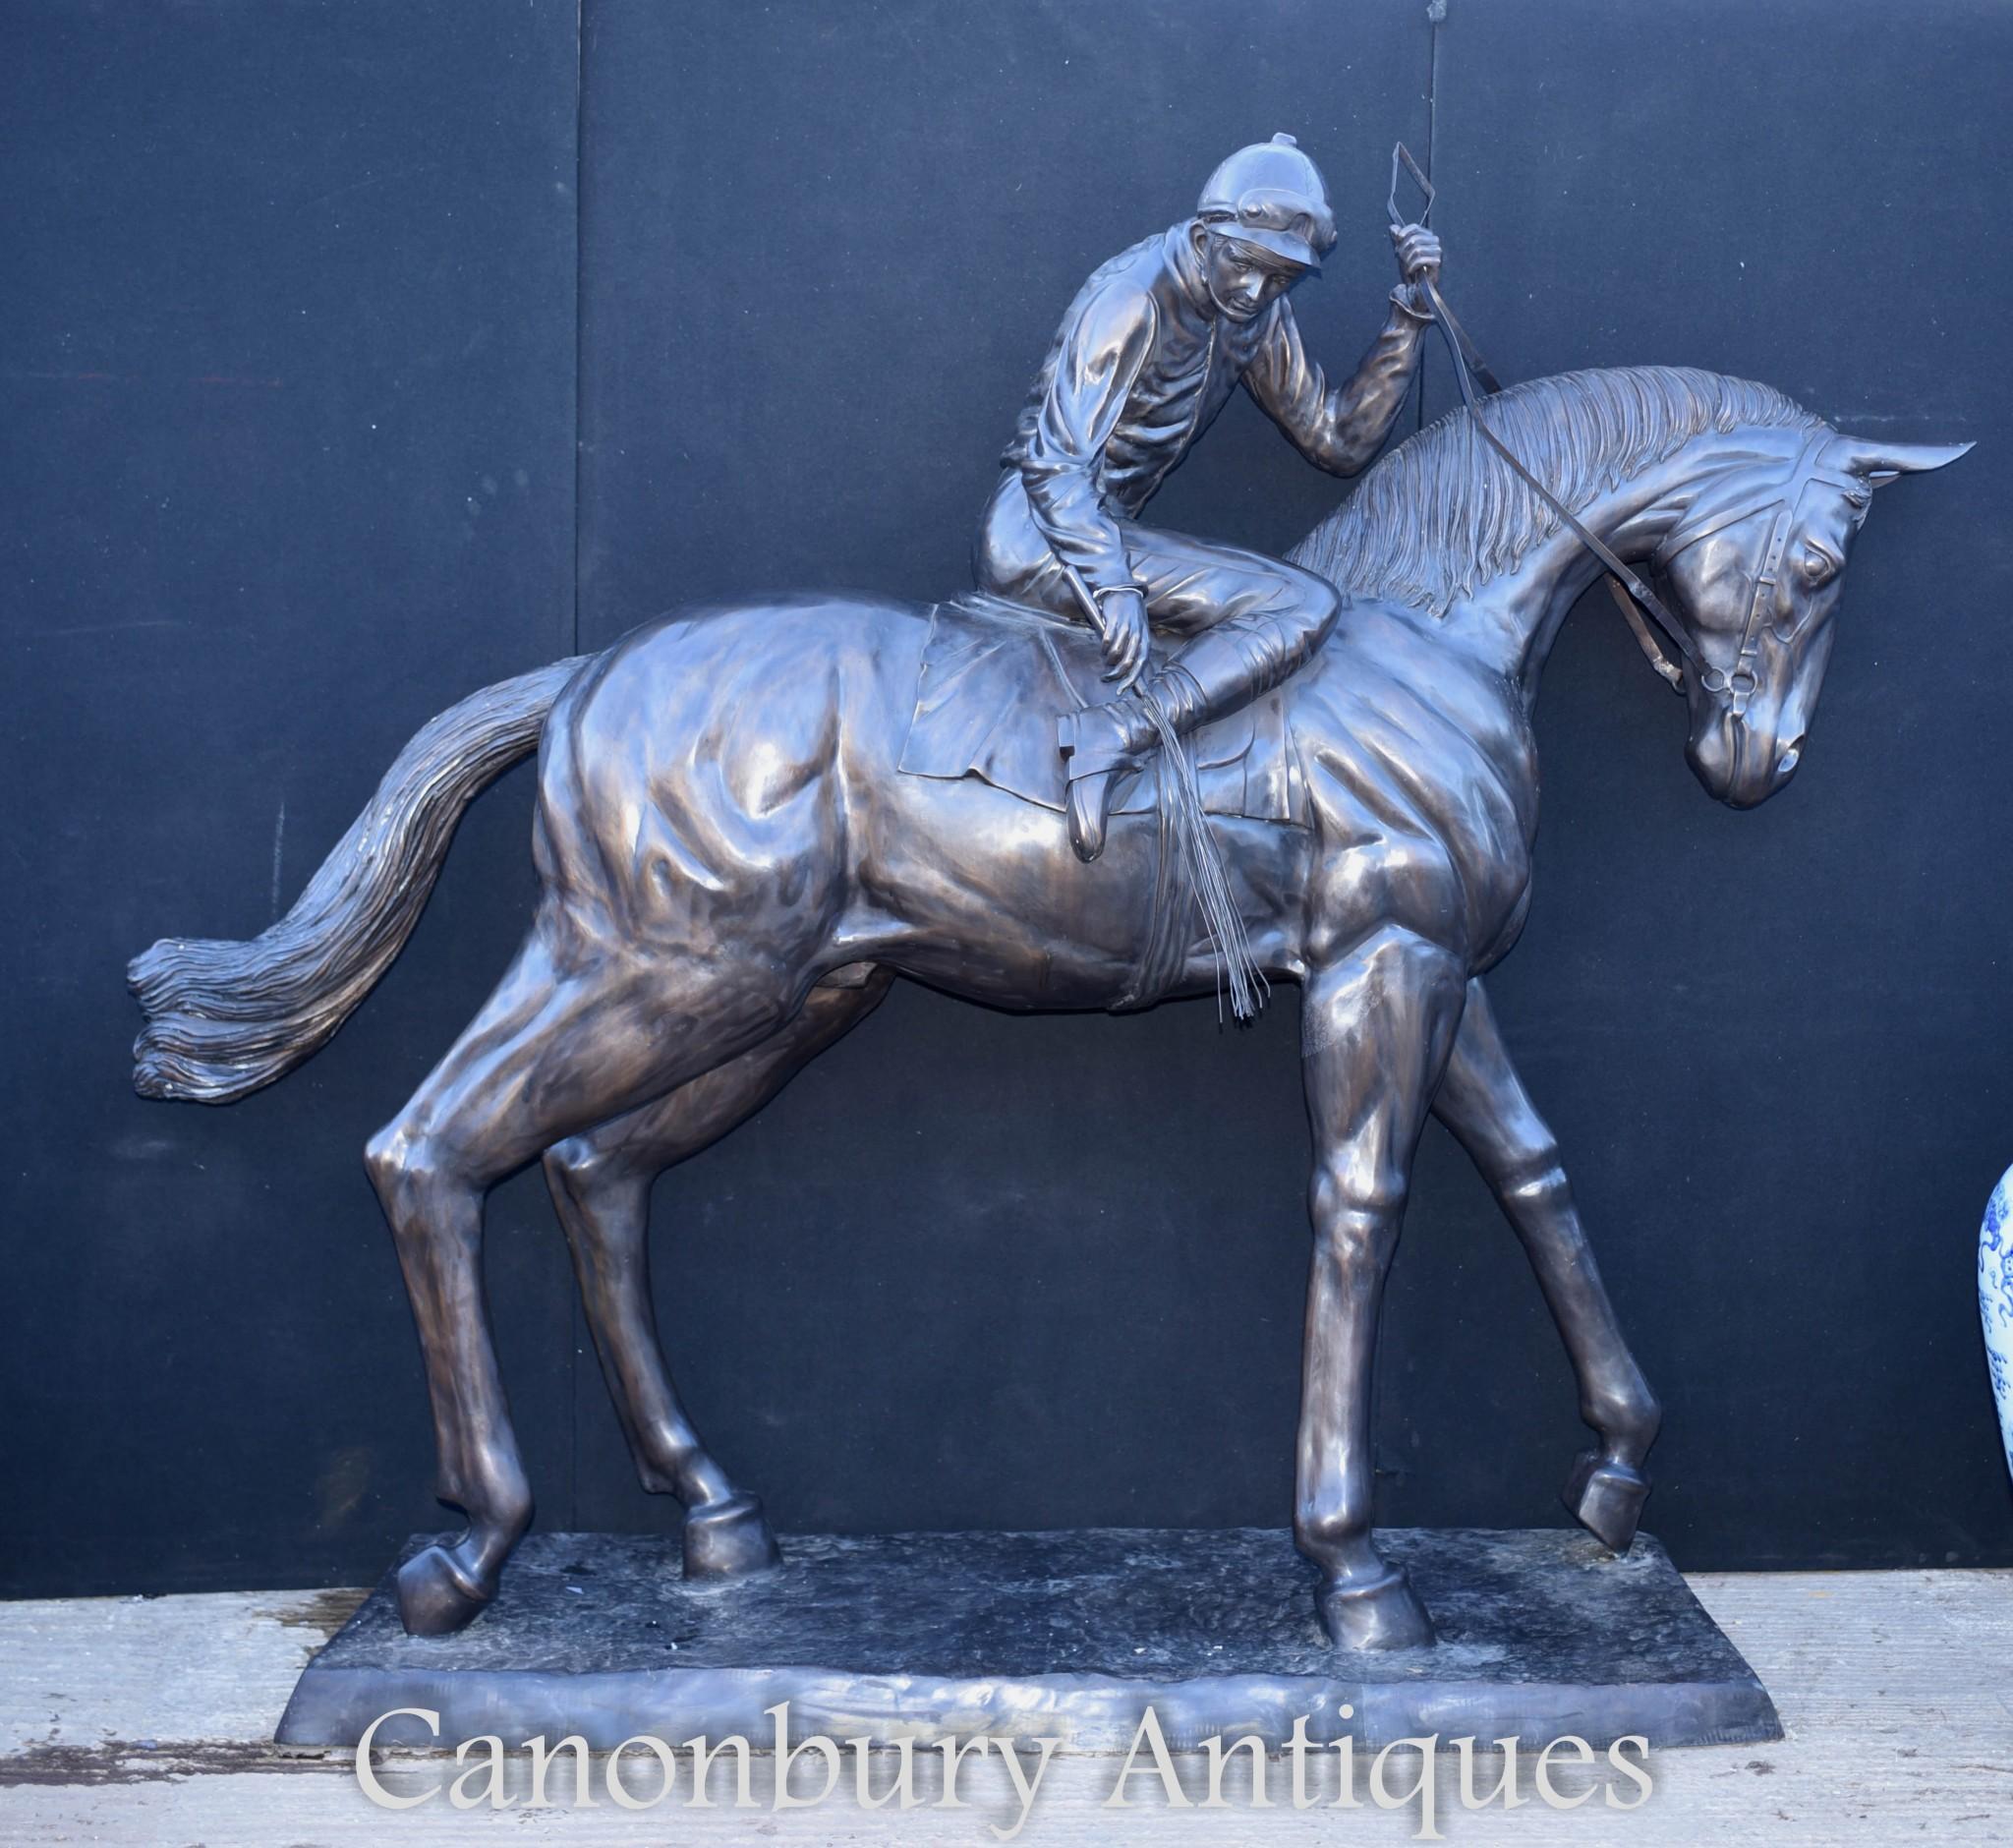 Magnifique statue de cheval et de jockey en bronze, grandeur nature, réalisée à l'origine par l'artiste français Isidore Bonheur. La hauteur est de 80 pouces - 203 CM.

Le cheval et le jockey sont peut-être l'un des sujets les plus populaires de